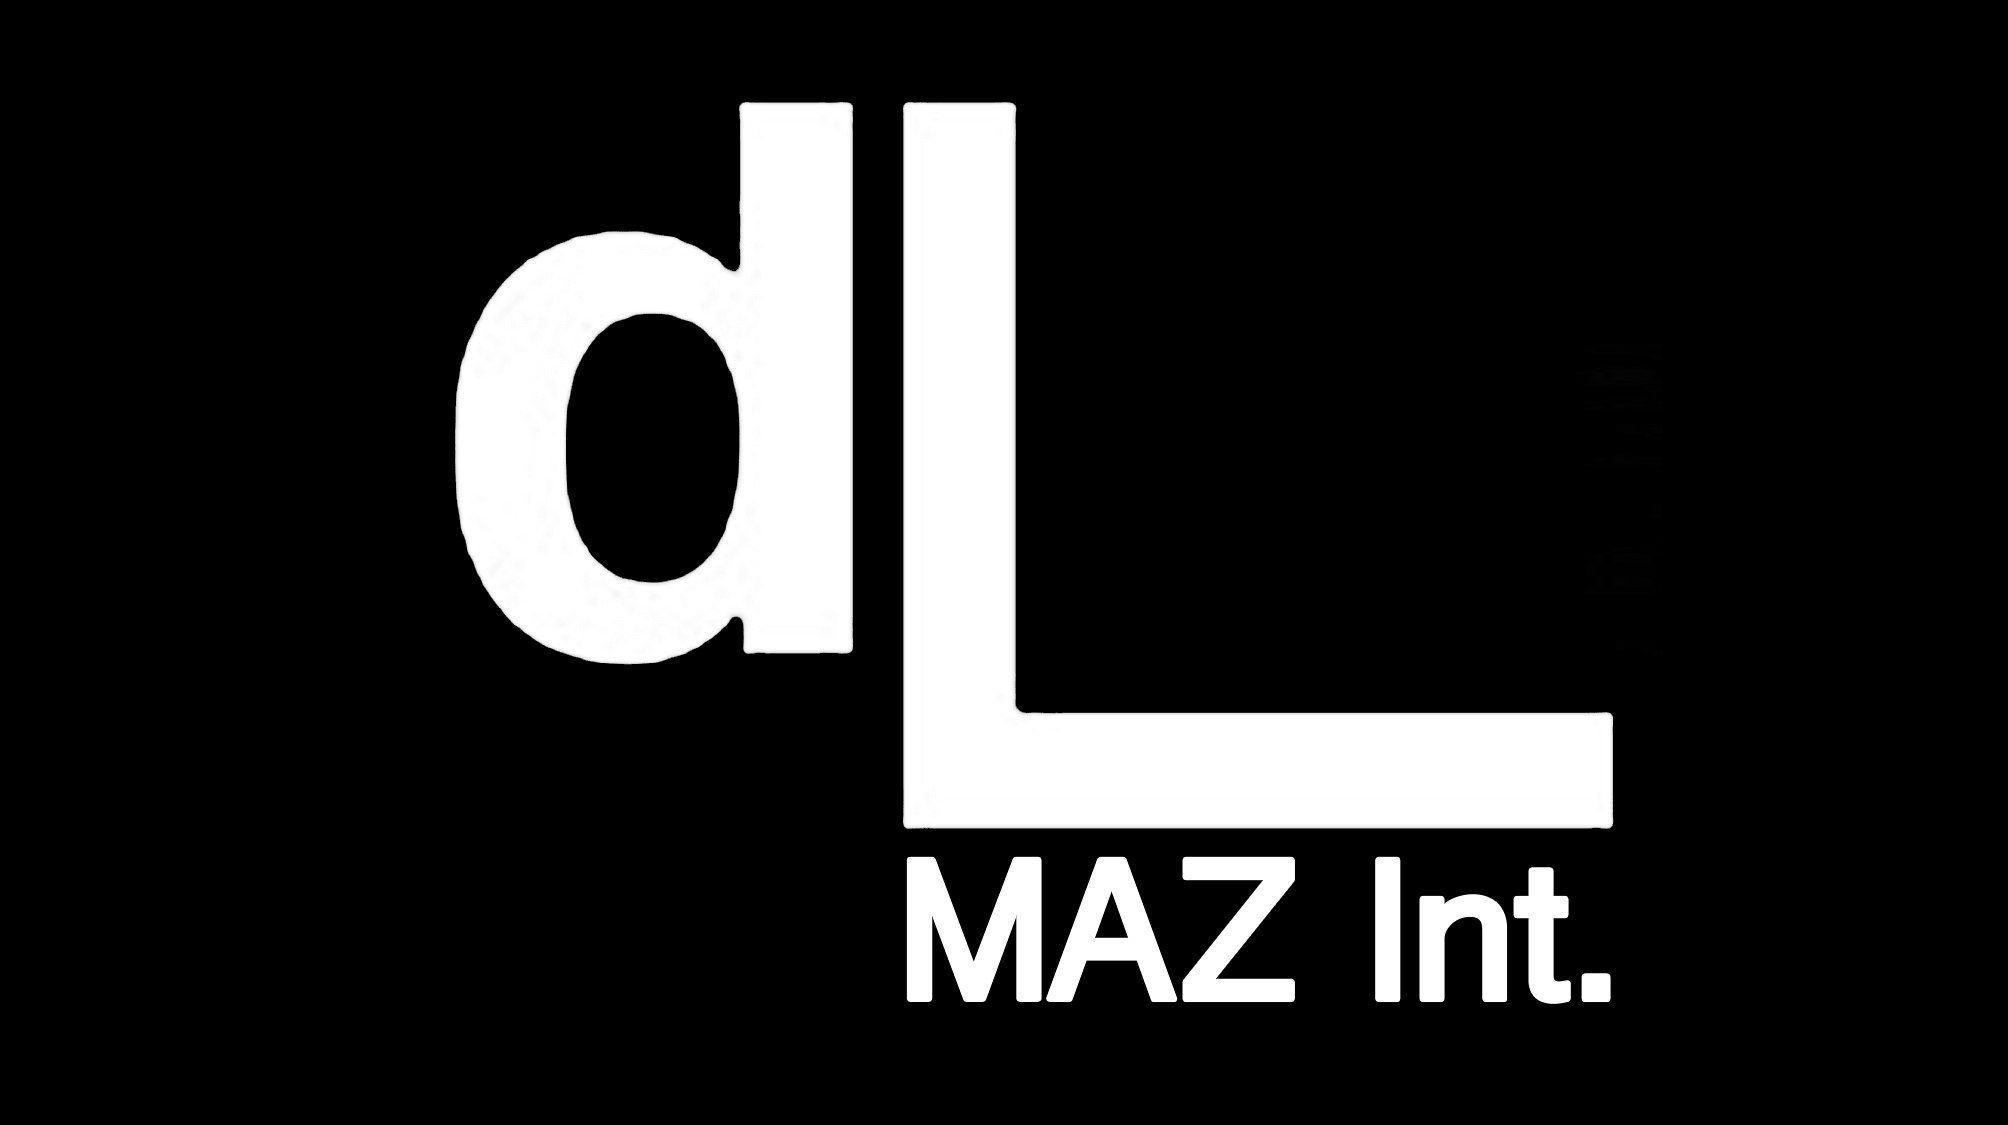 draftLine MAZ cumple 3 años transformando el negocio de AB InBev y sus partners con creatividad, tecnología y talento